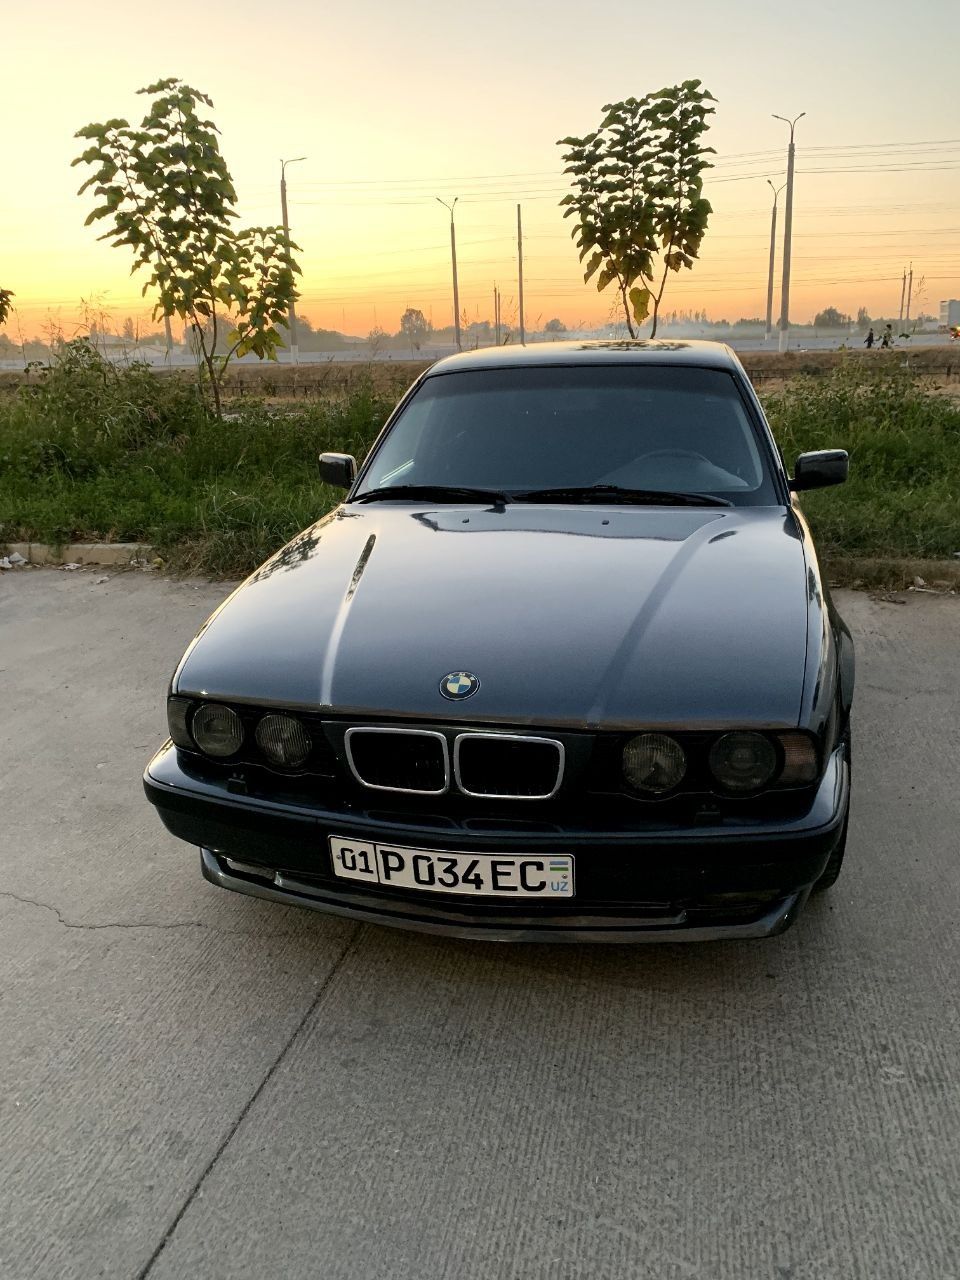 BMW E34 sotiladi 
Yili 1989
Mator 3.5
R18 diska
Pioner ma